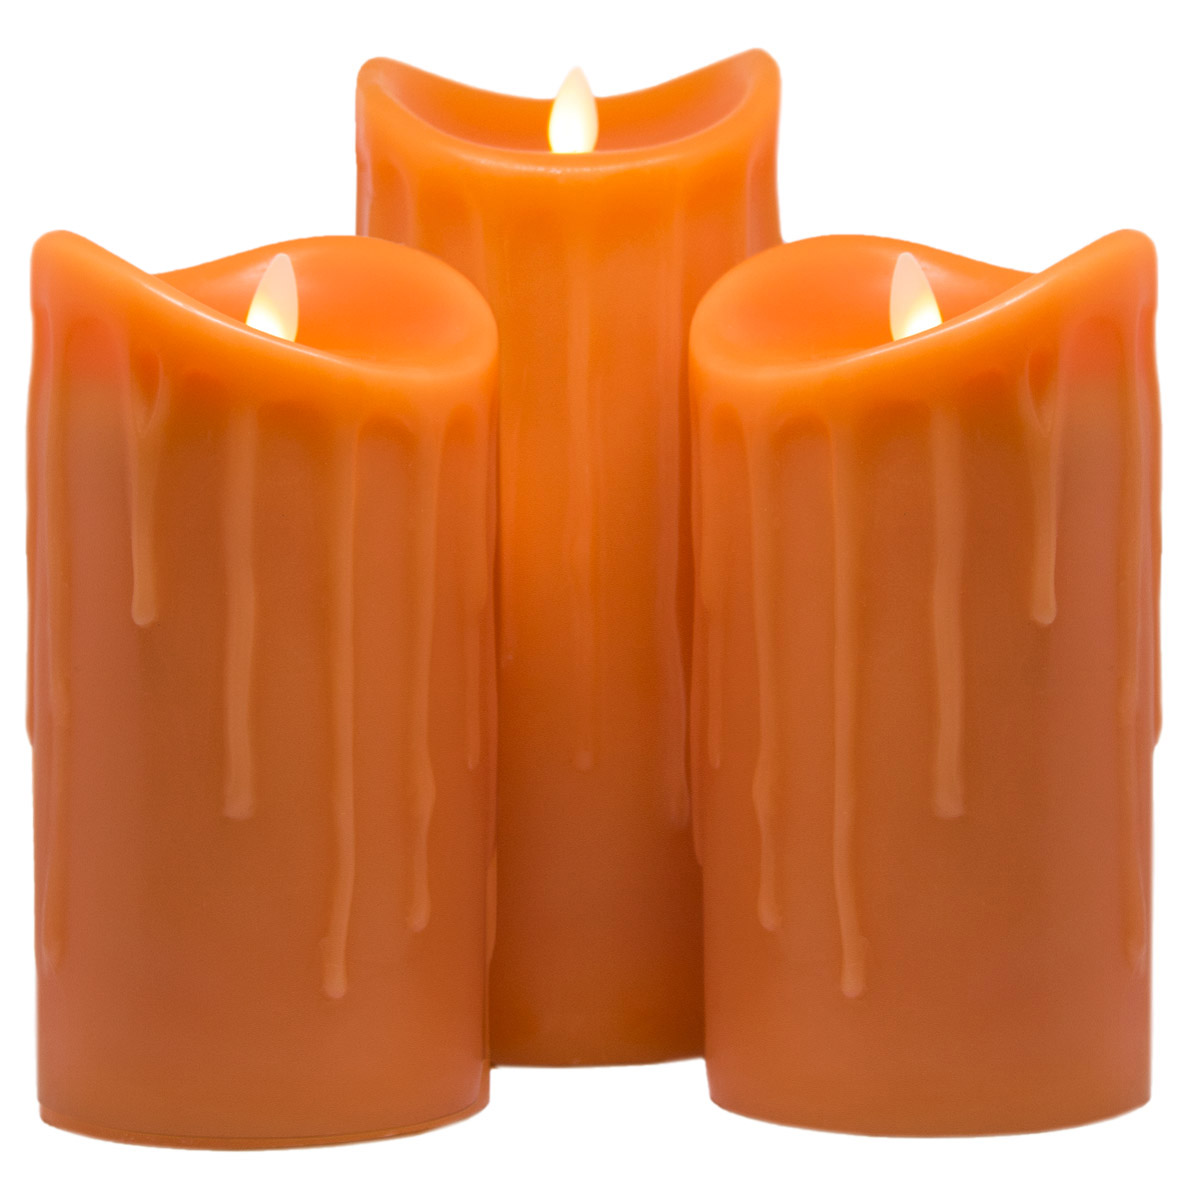 LED-Echtwachskerzen, 3er Set, Orange, 18cm + 18cm + 23cm, Wachstropfendesign